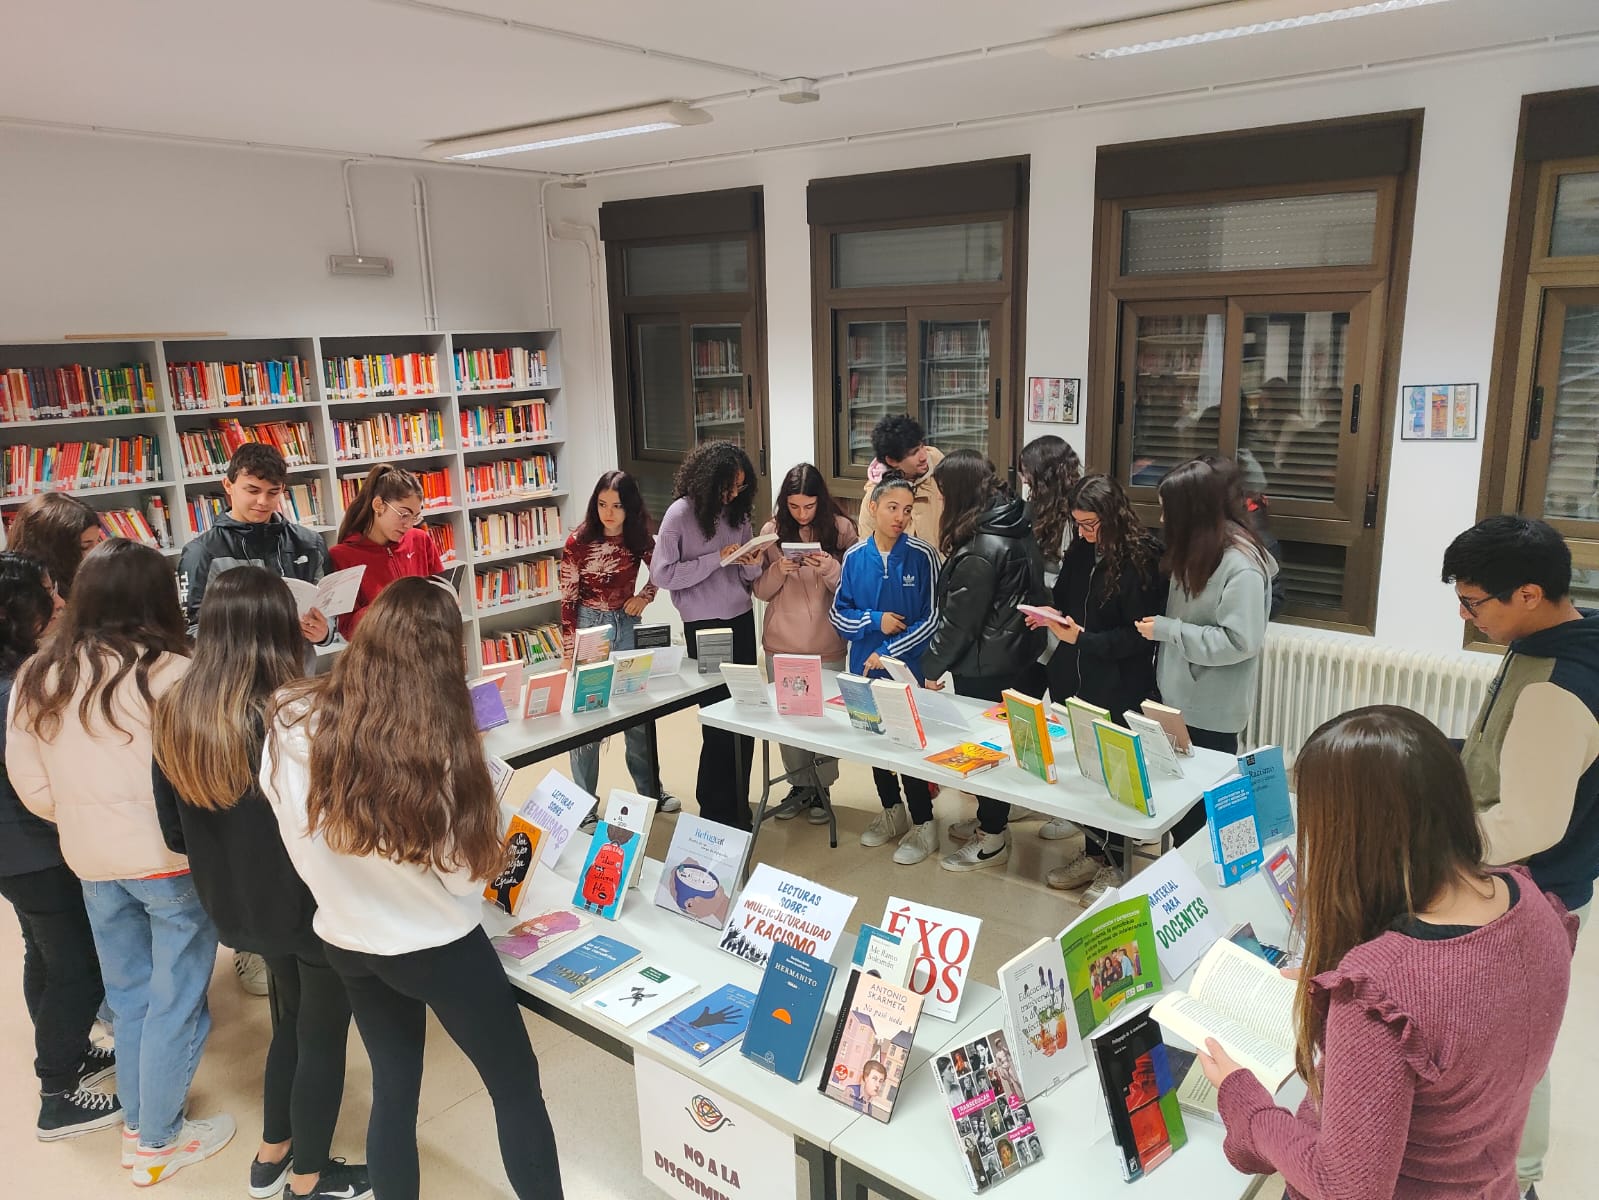 Exposición en la biblioteca del IES Valle del Ebro